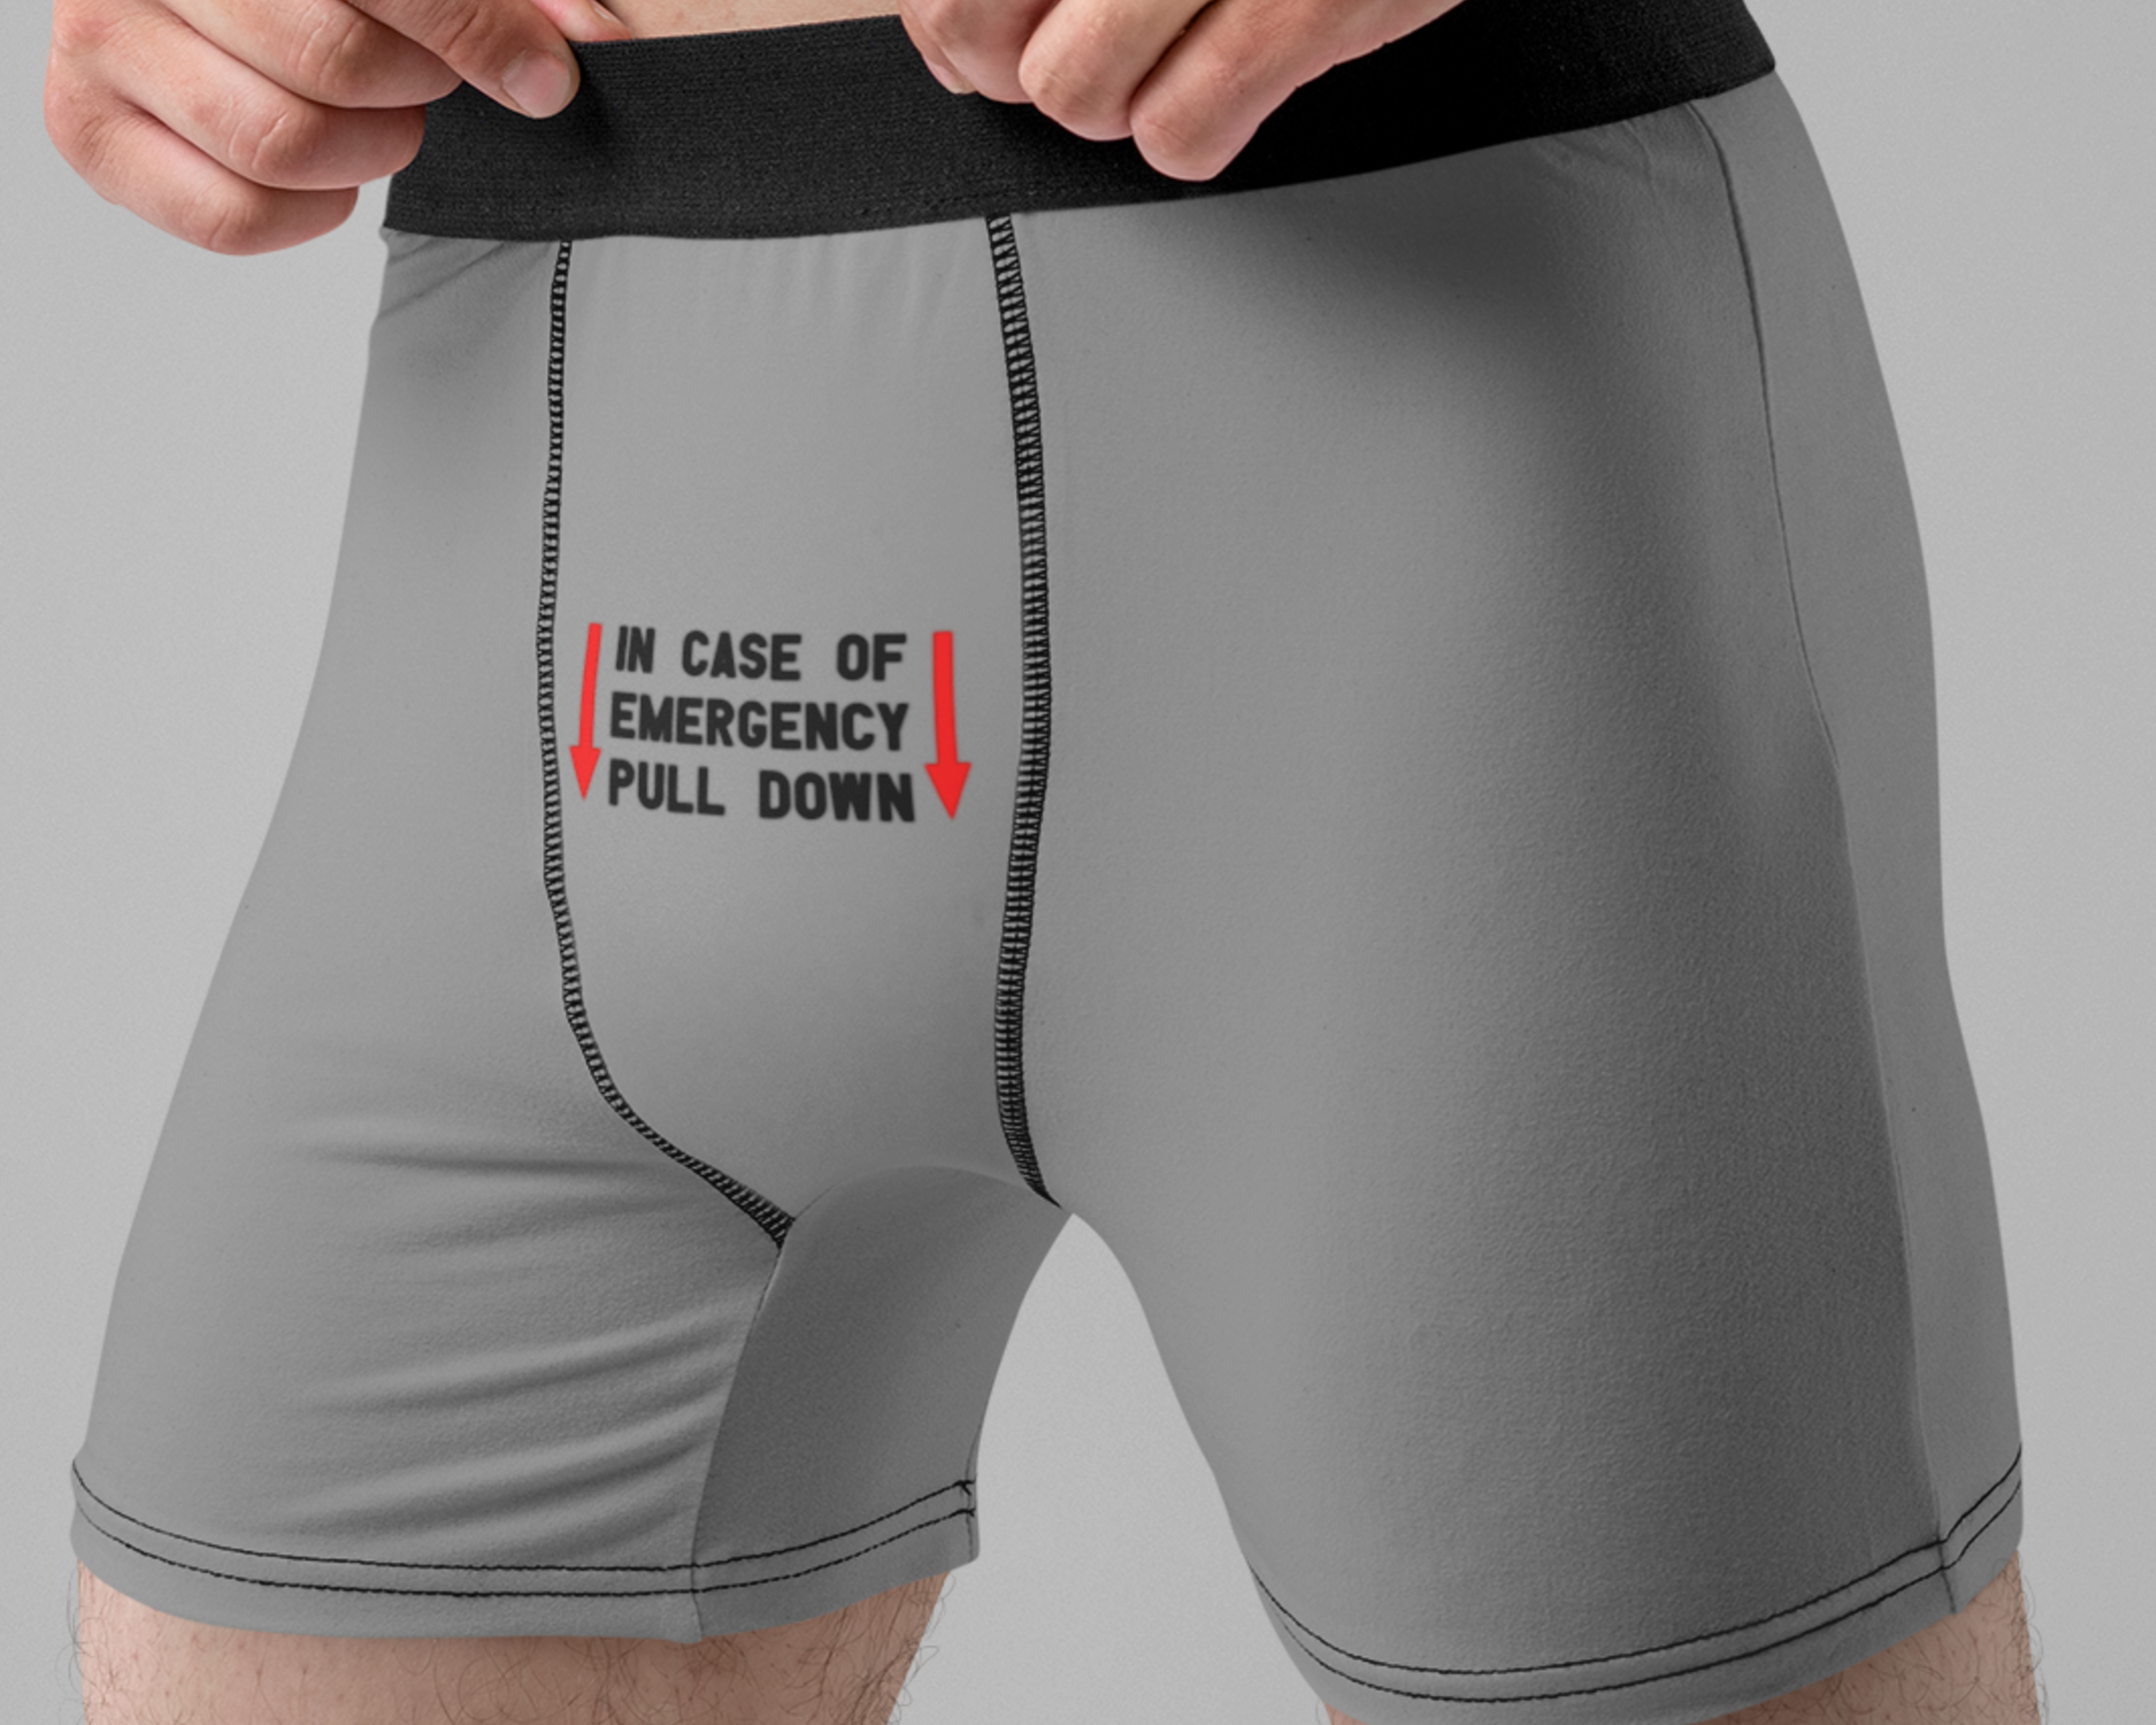 Warning Choking Hazard Men's Underwear Naughty Underwear